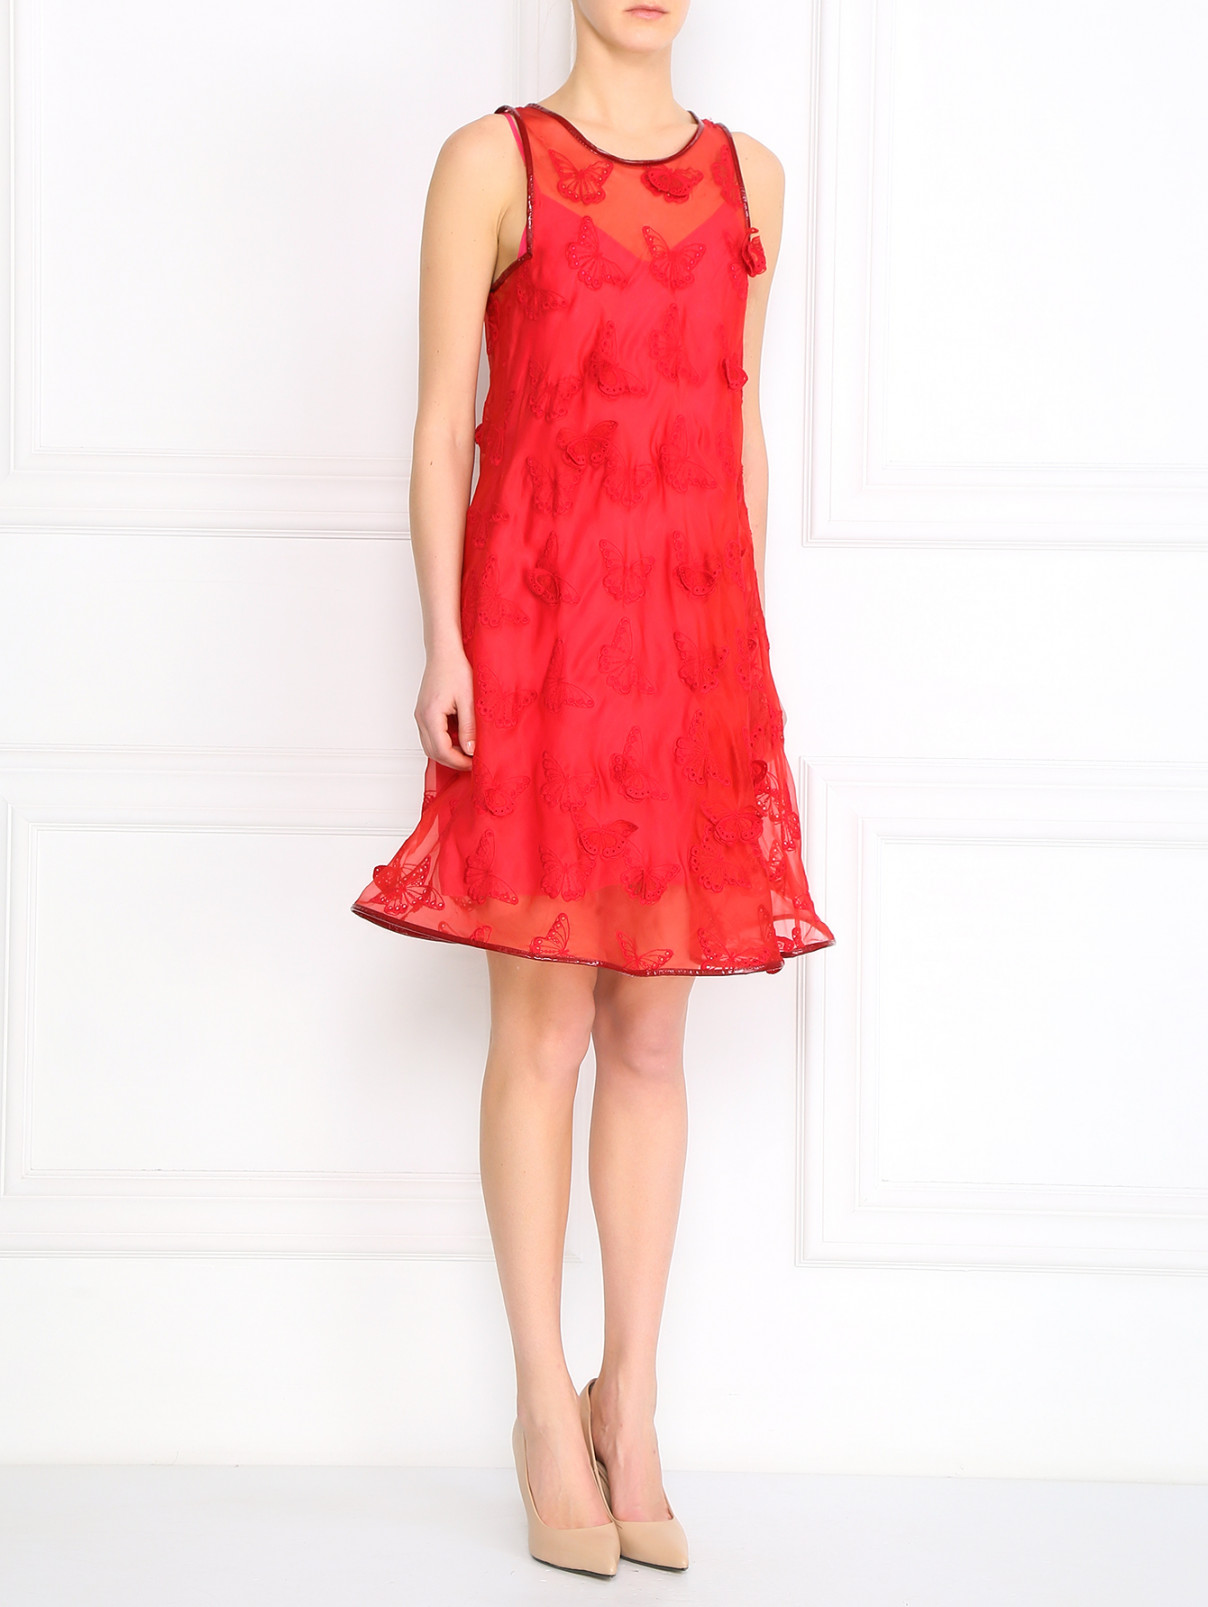 Шелковое платье декорированное кружевными деталями Sportmax  –  Модель Общий вид  – Цвет:  Красный